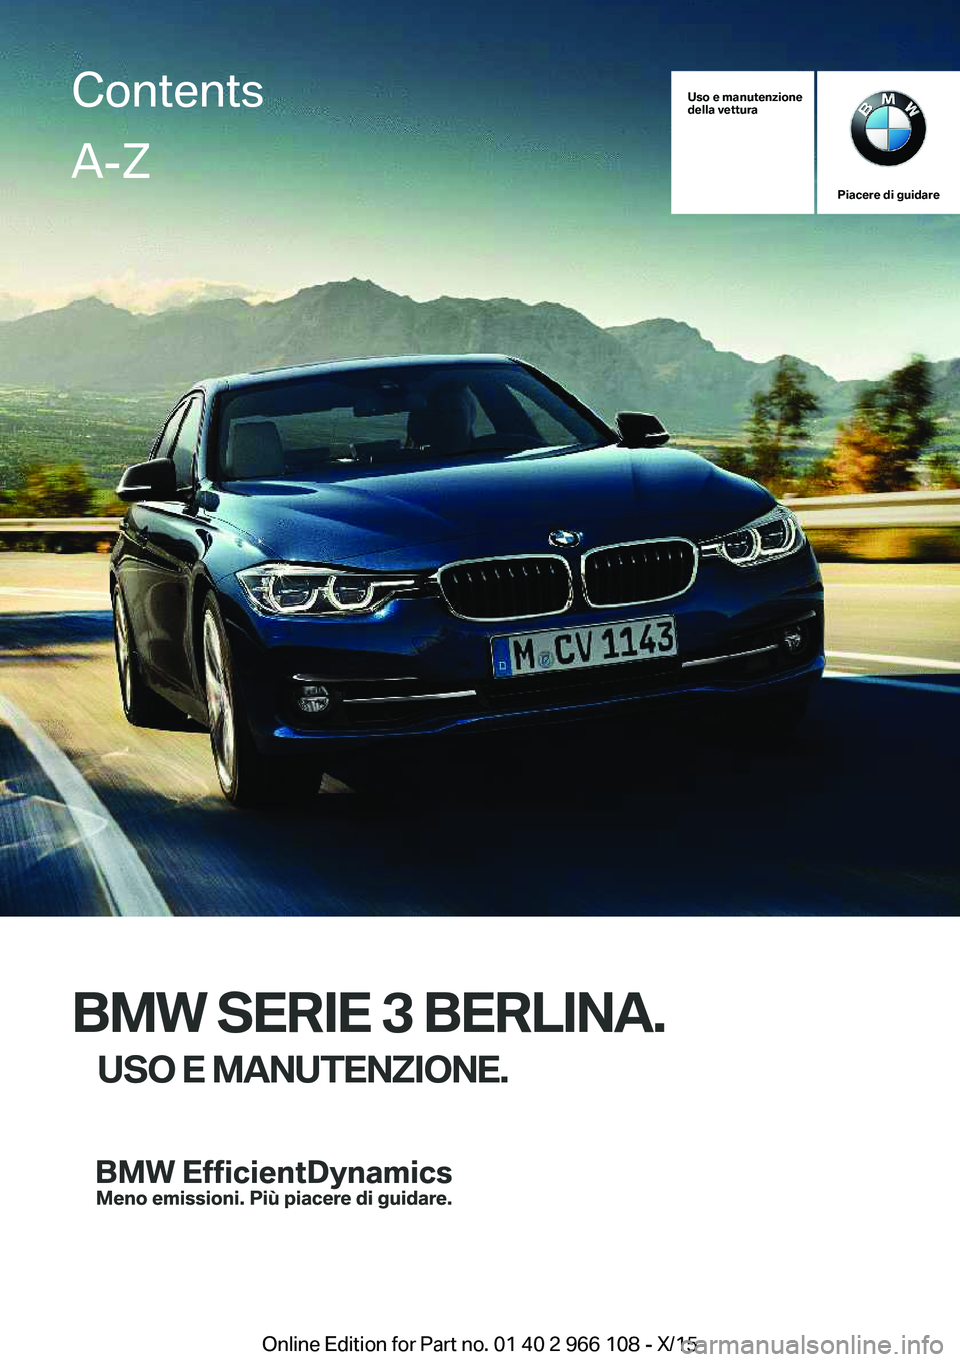 BMW 3 SERIES 2016  Libretti Di Uso E manutenzione (in Italian) Uso e manutenzione
della vettura
Piacere di guidare
BMW SERIE 3 BERLINA.
USO E MANUTENZIONE.
ContentsA-Z
Online Edition for Part no. 01 40 2 966 108 - X/15   